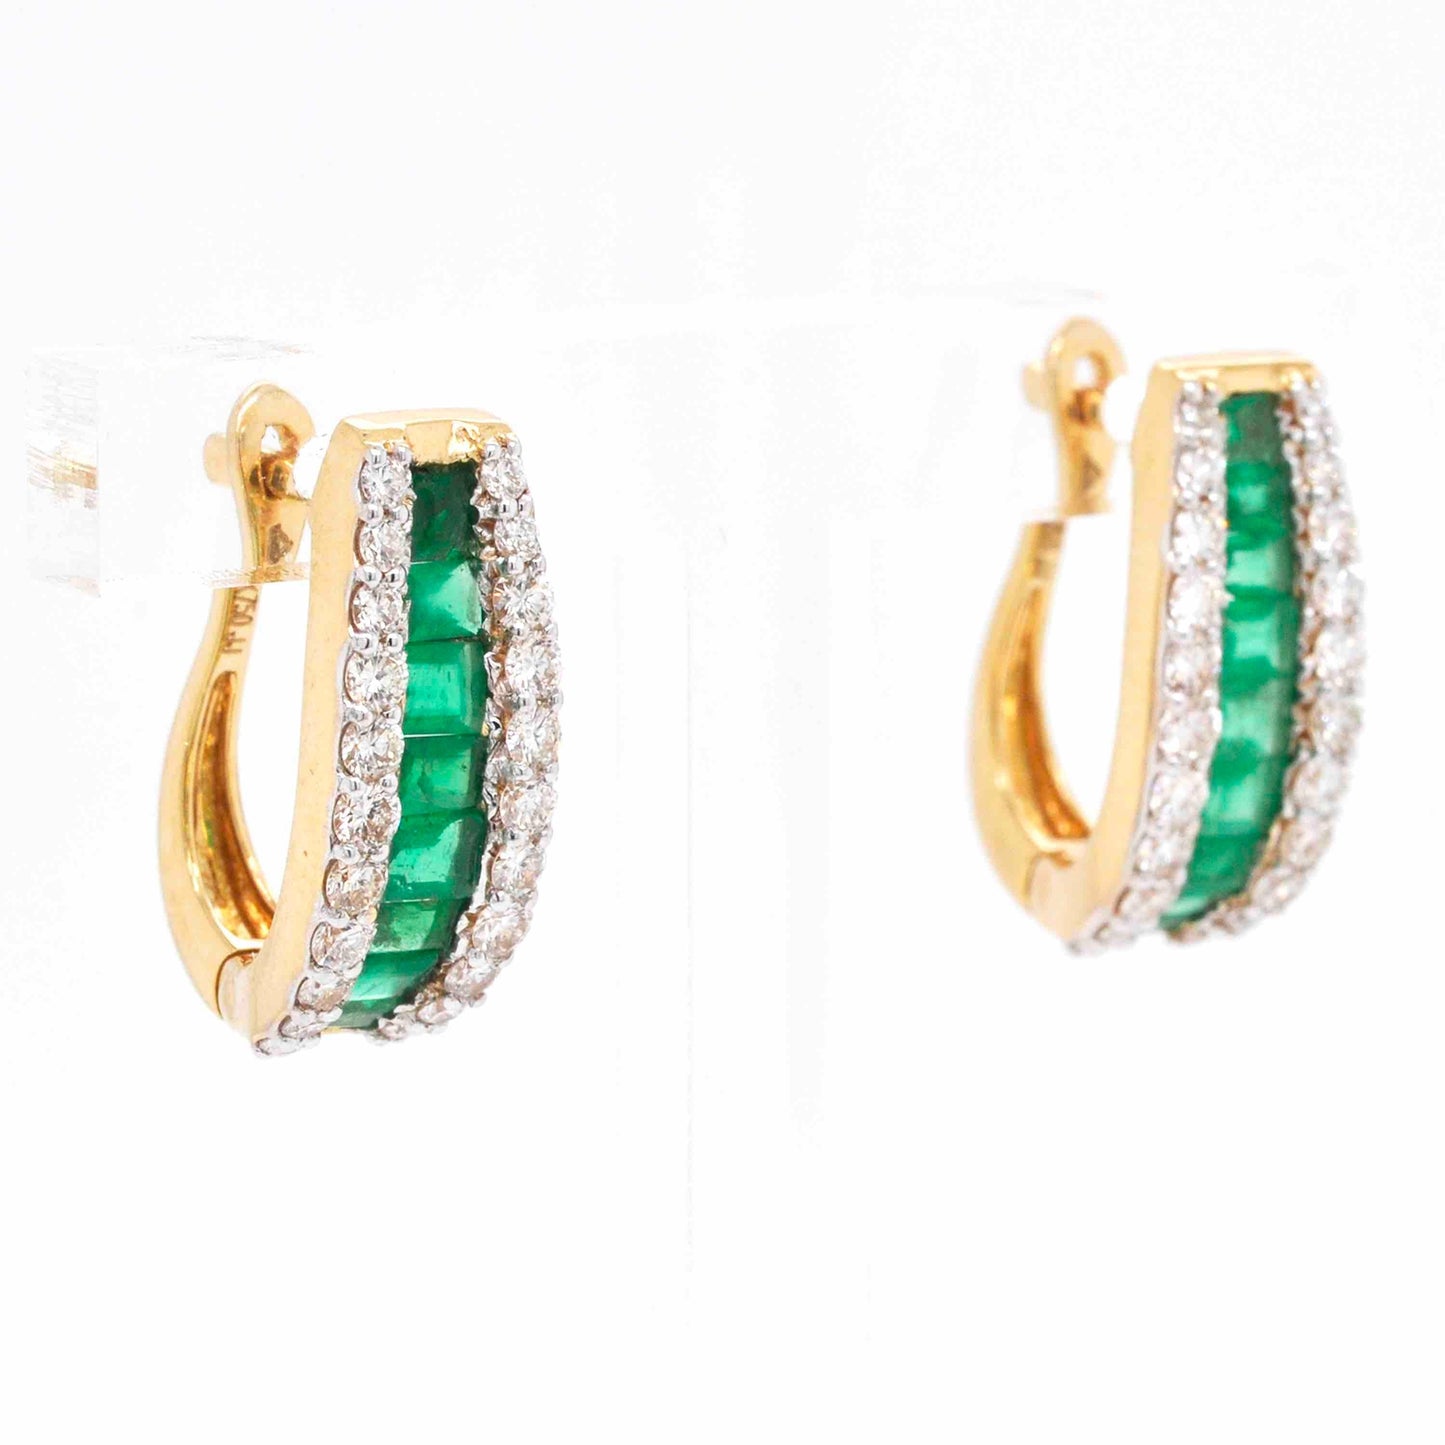 Huggie hoop earrings with emerald gemstones